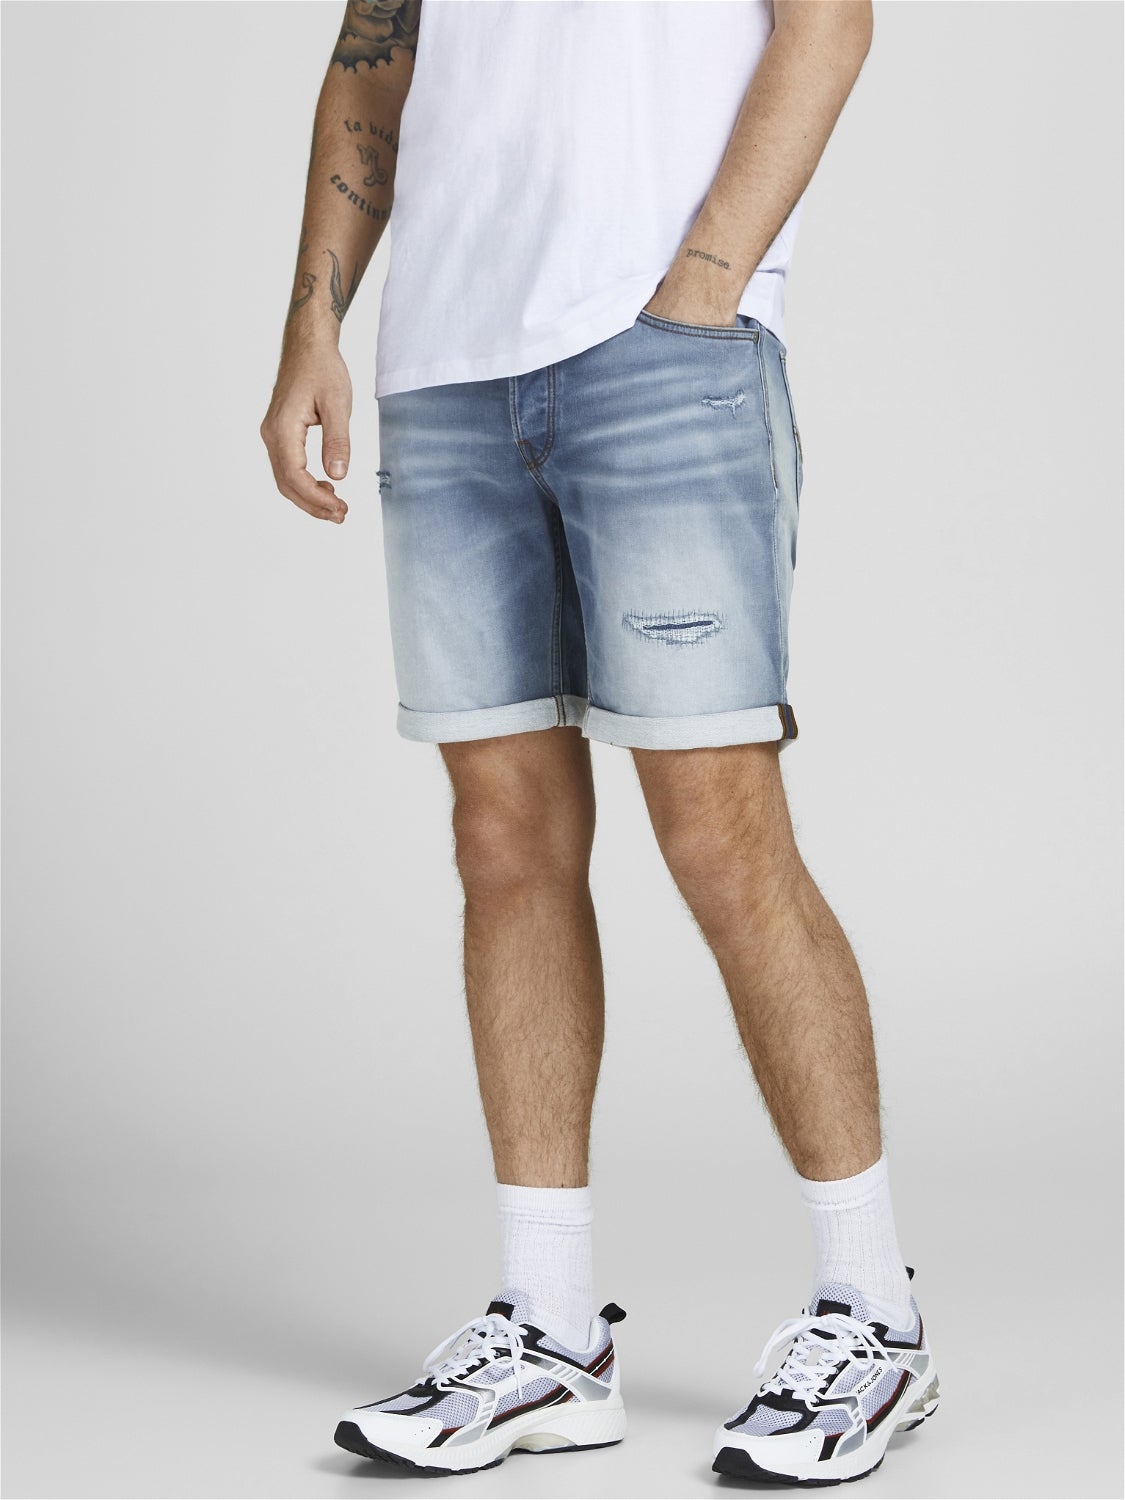 MEN FASHION Jeans Basic Jack & Jones shorts jeans discount 56% Navy Blue S 